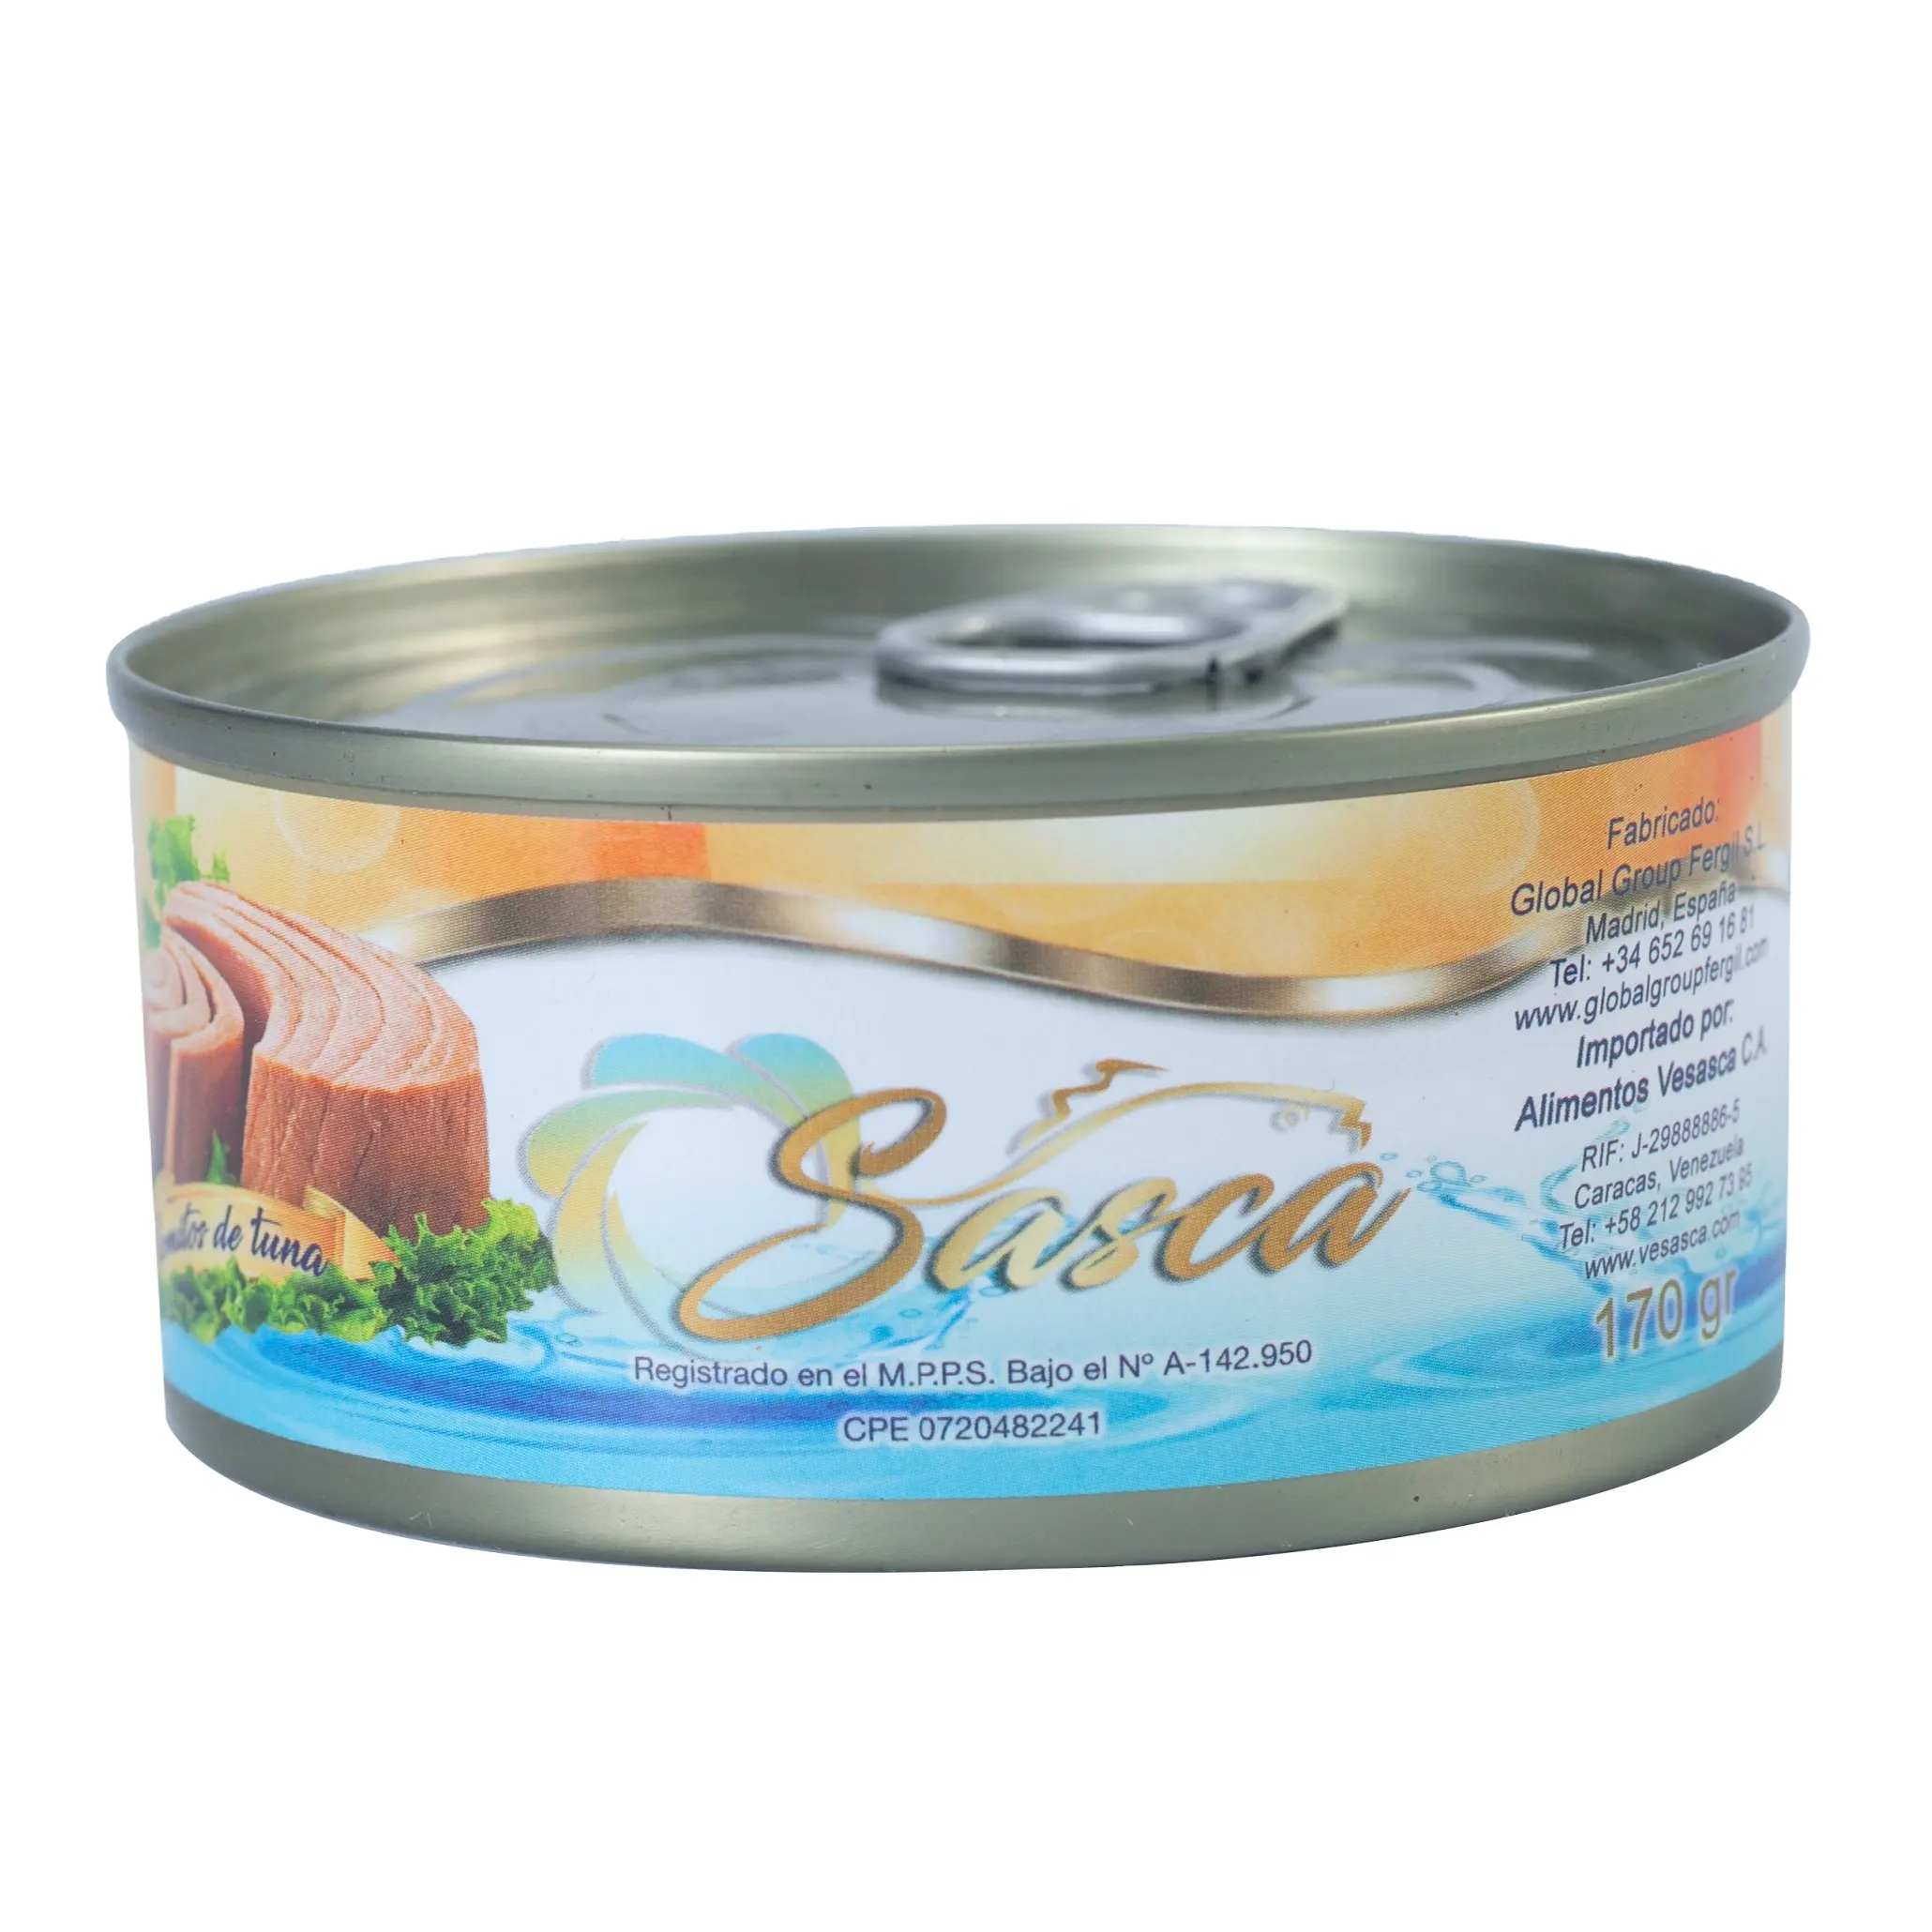 Fabrik verkauf niedriger Preis 125g Sardine in Dosen in Öl aus China Sardinen in Tomatensauce für Thunfisch in Dosen Meeres früchte Thunfisch